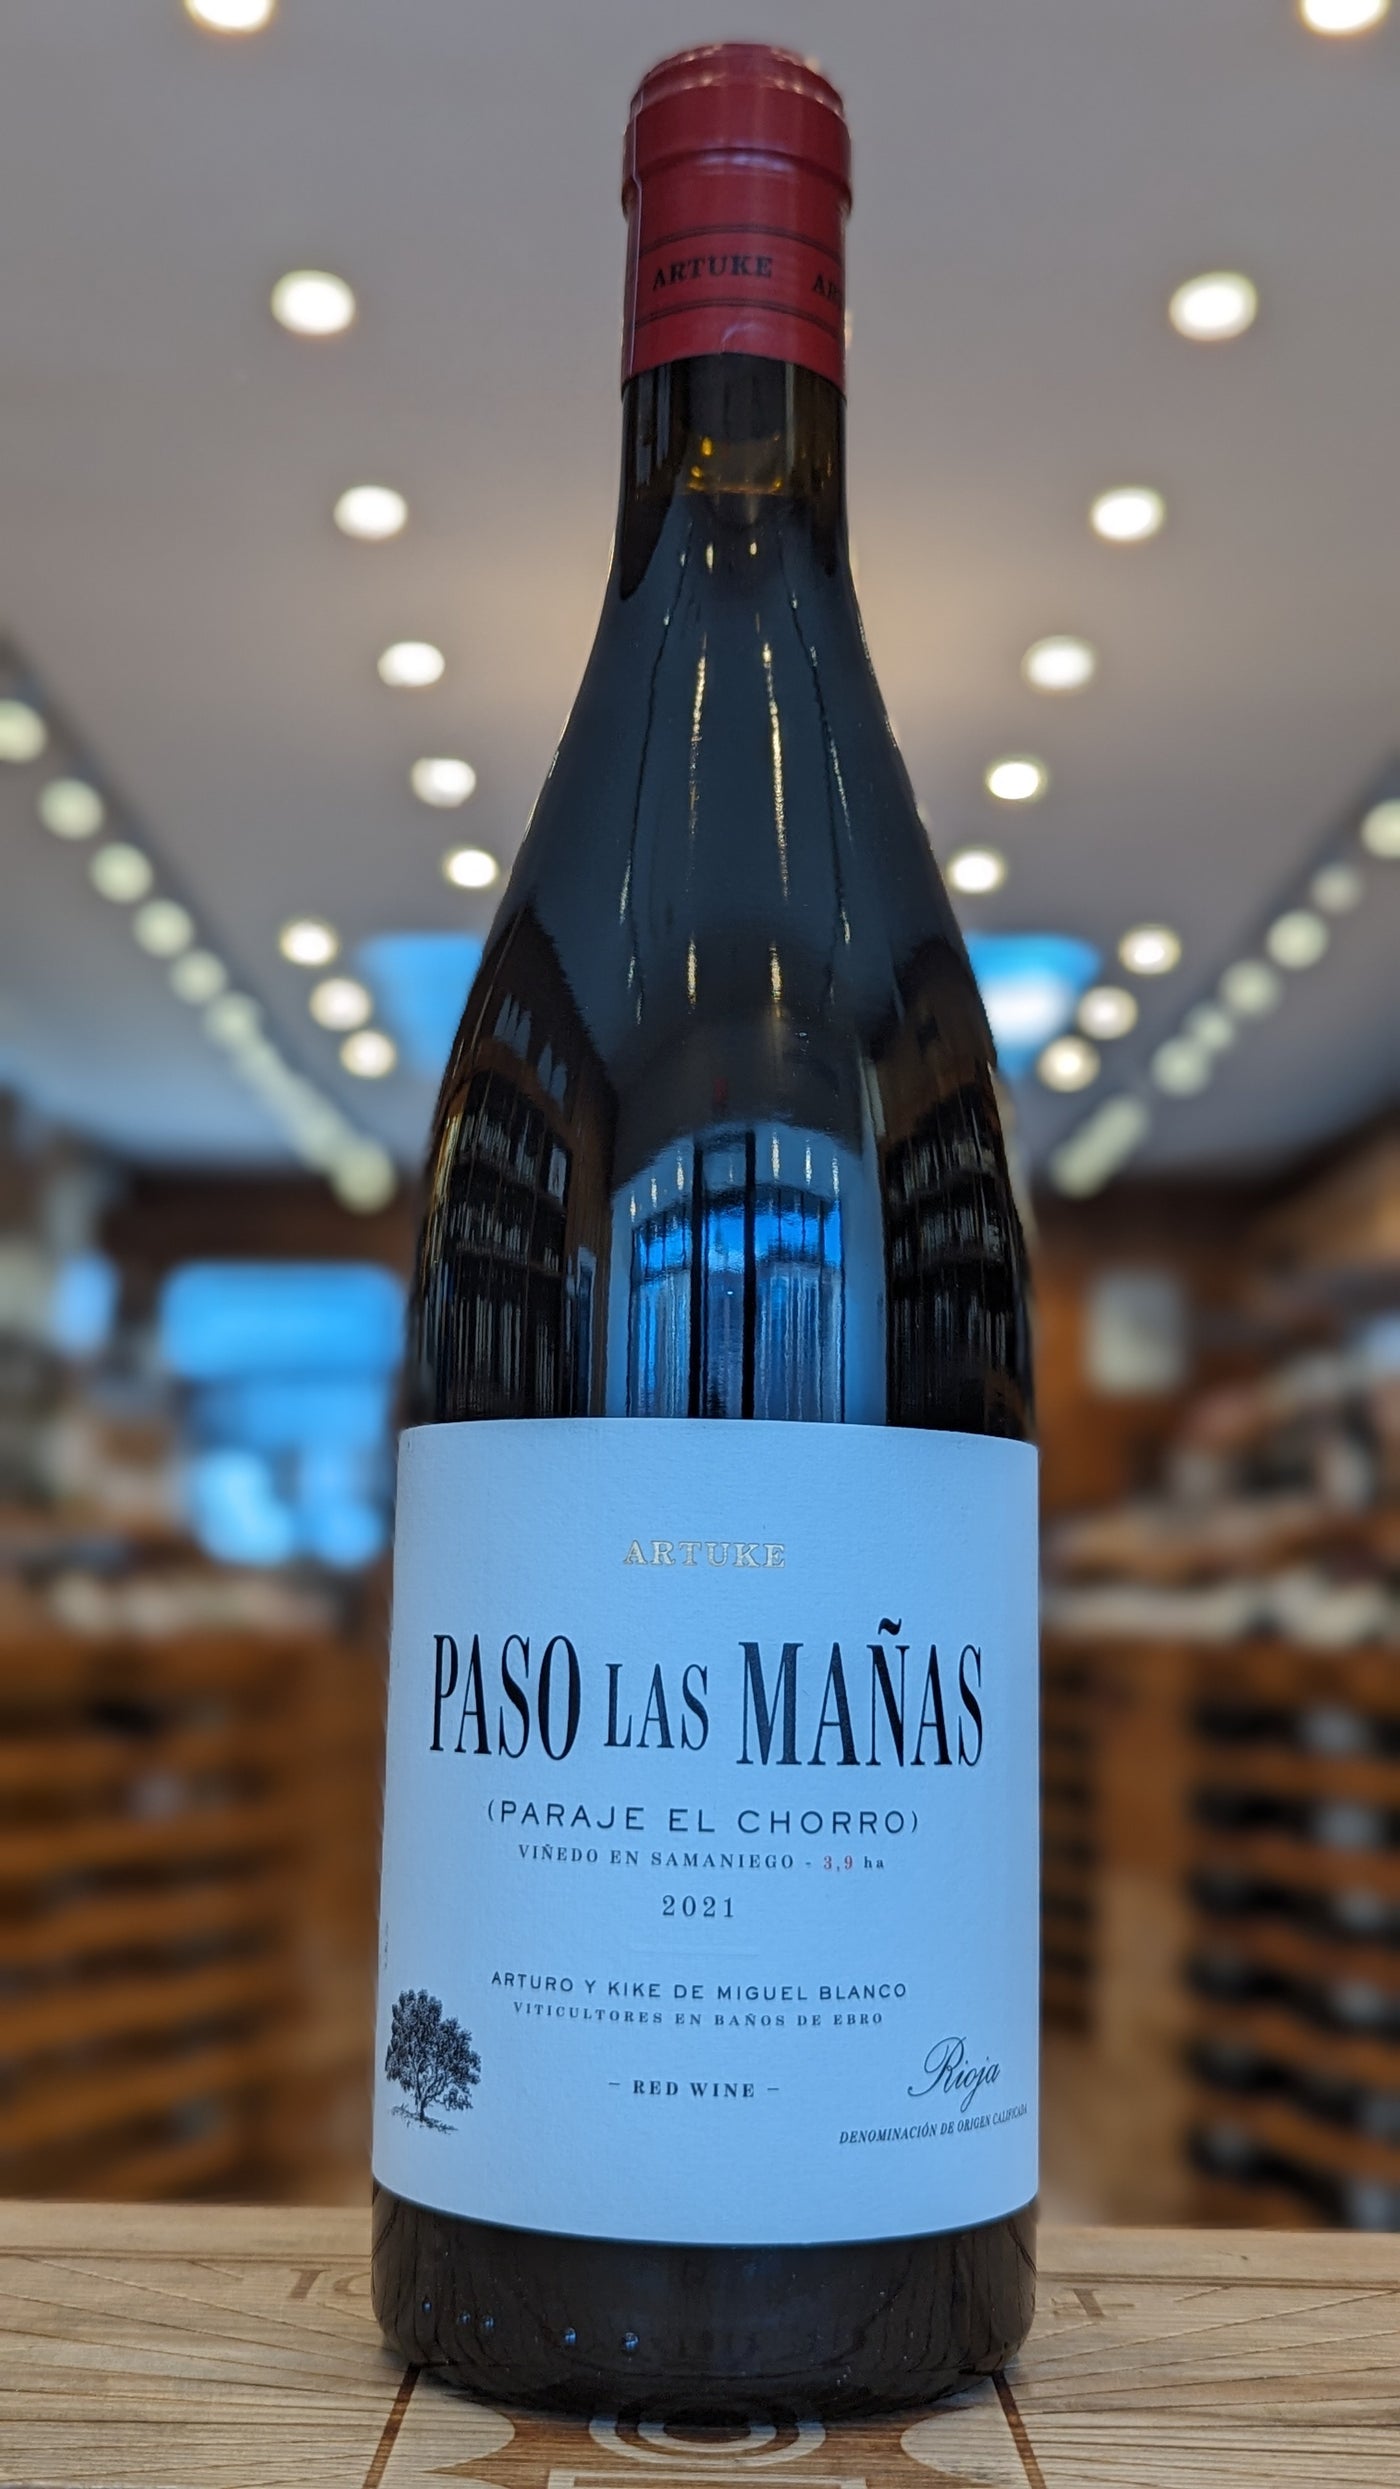 Artuke Paso Las Manas Rioja 2021